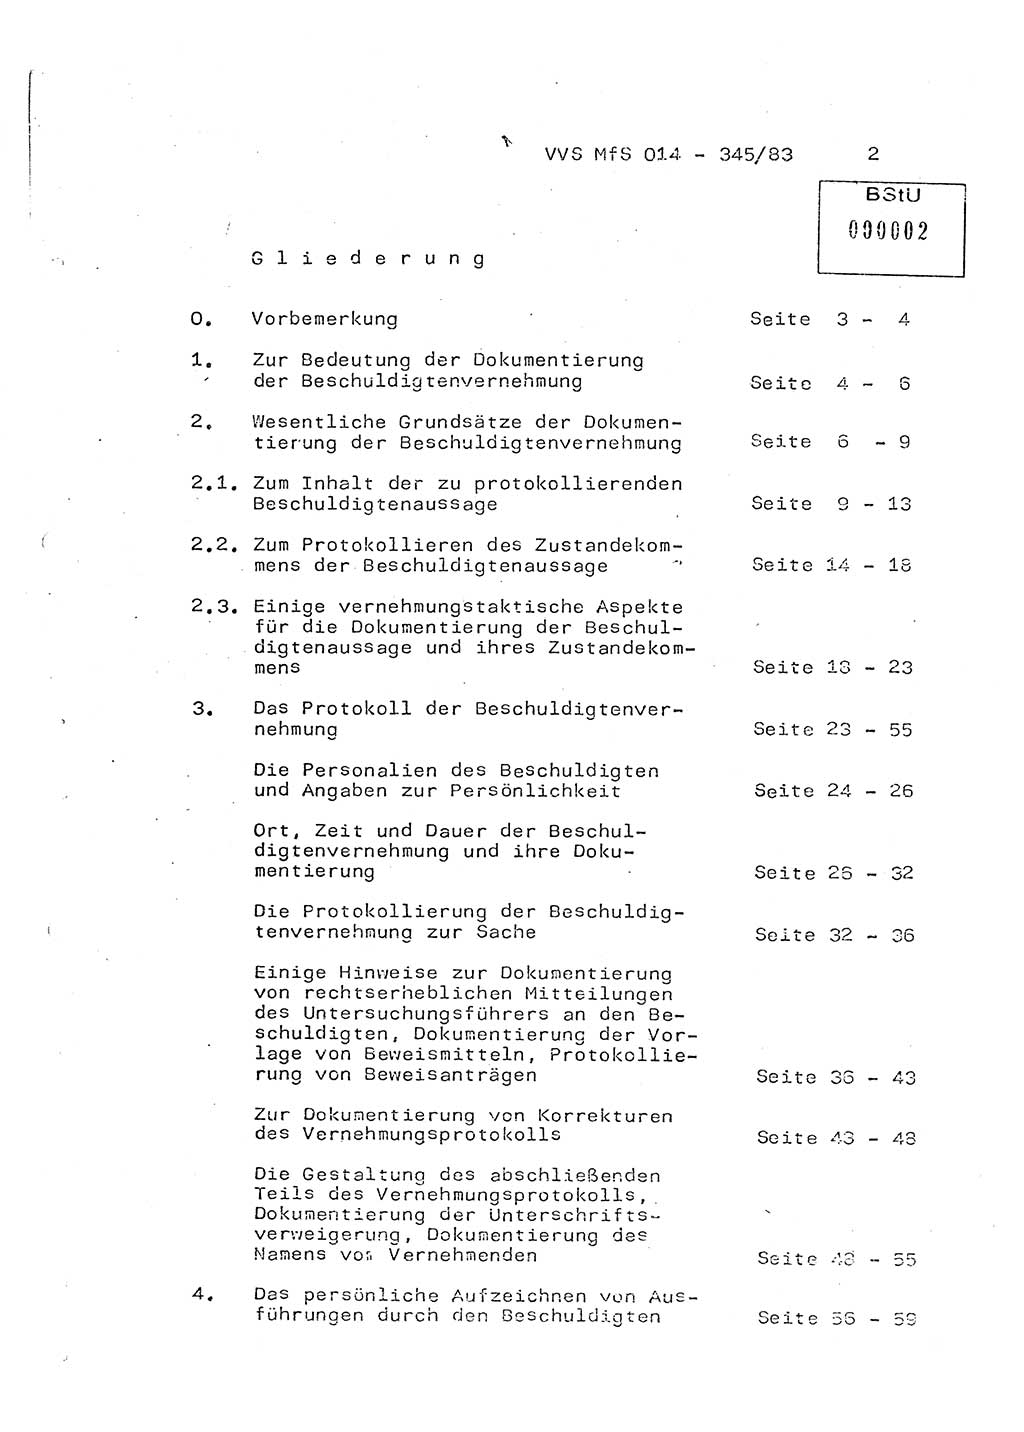 Lektion Ministerium für Staatssicherheit (MfS) [Deutsche Demokratische Republik (DDR)], Hauptabteilung (HA) Ⅸ, Vertrauliche Verschlußsache (VVS) o014-345/83, Berlin 1983, Seite 2 (Lekt. MfS DDR HA Ⅸ VVS o014-345/83 1983, S. 2)